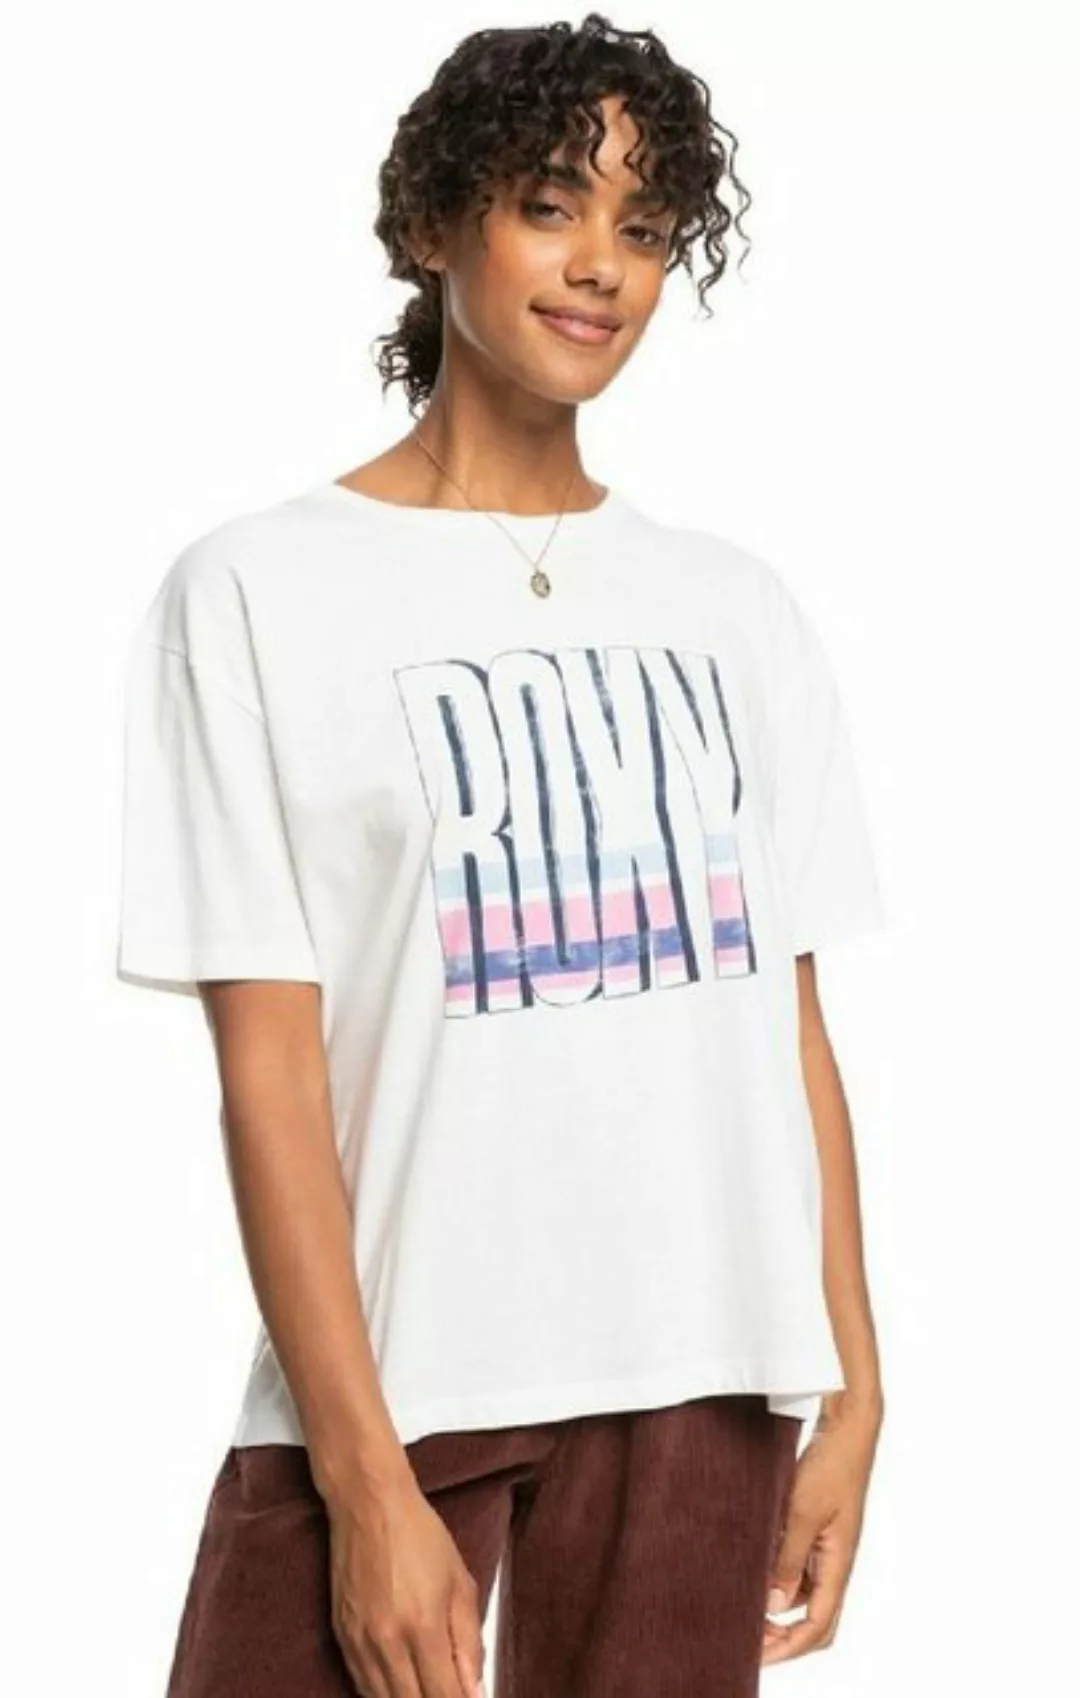 Roxy T-Shirt günstig online kaufen